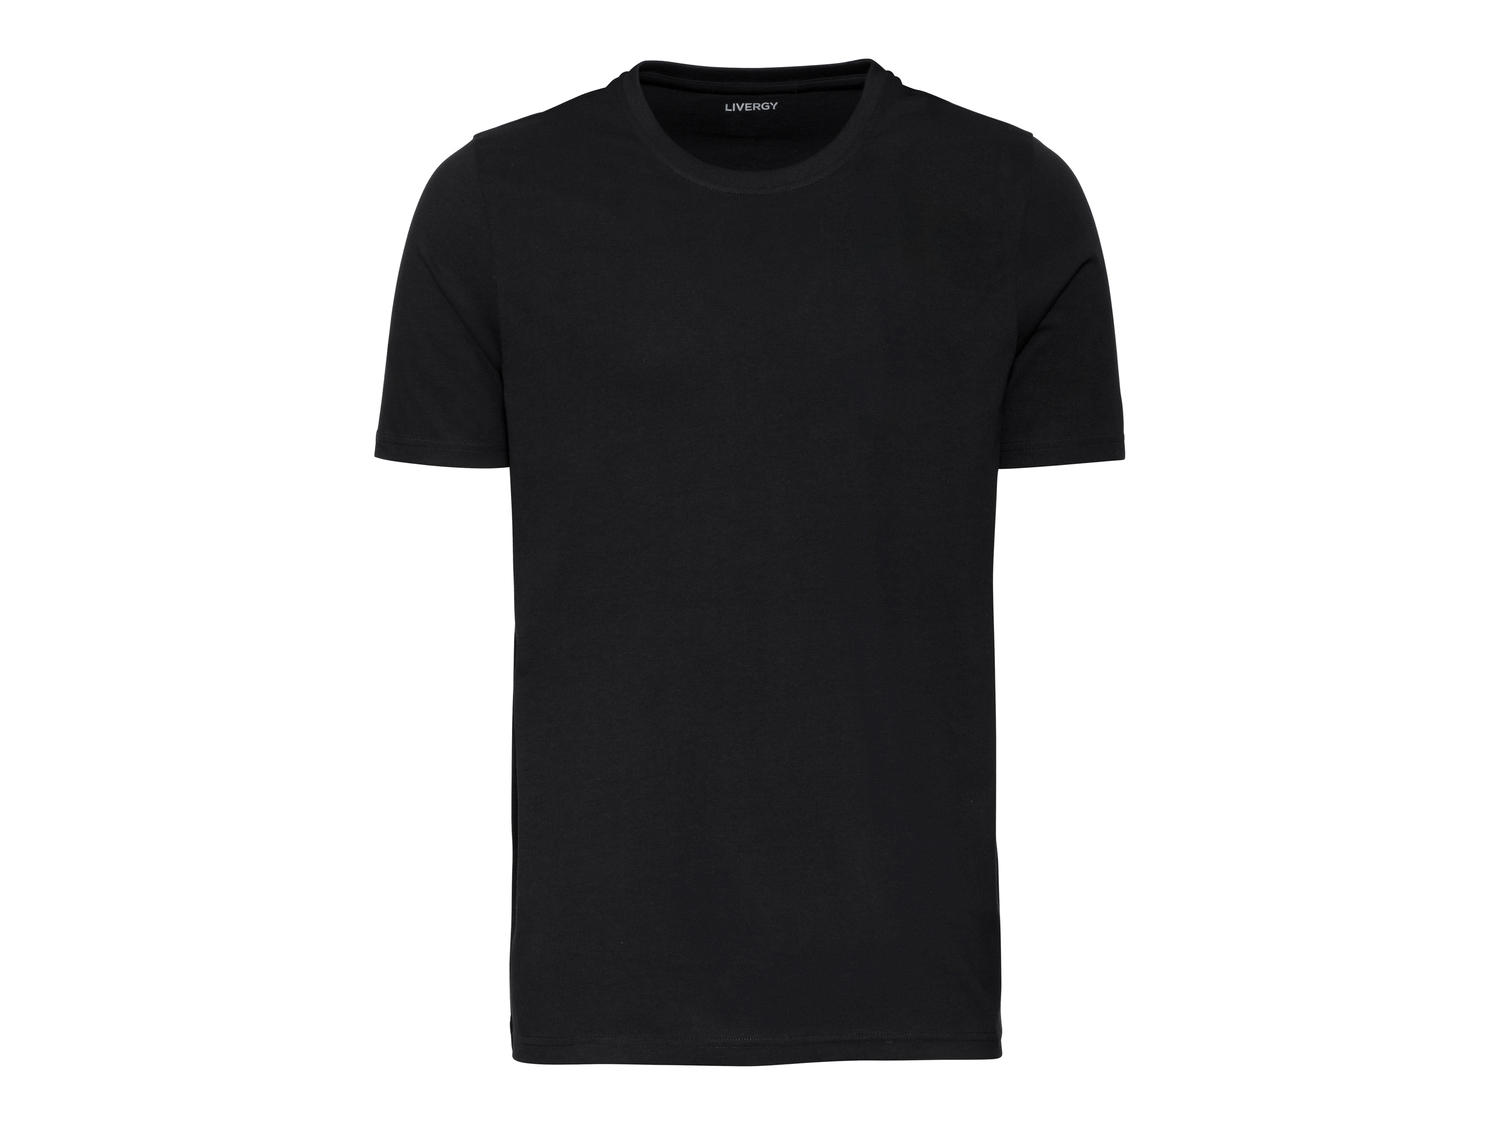 T-shirt da uomo Livergy, prezzo 6.99 € 
2 pezzi - Misure: S-XL
Taglie disponibili

Caratteristiche

- ...